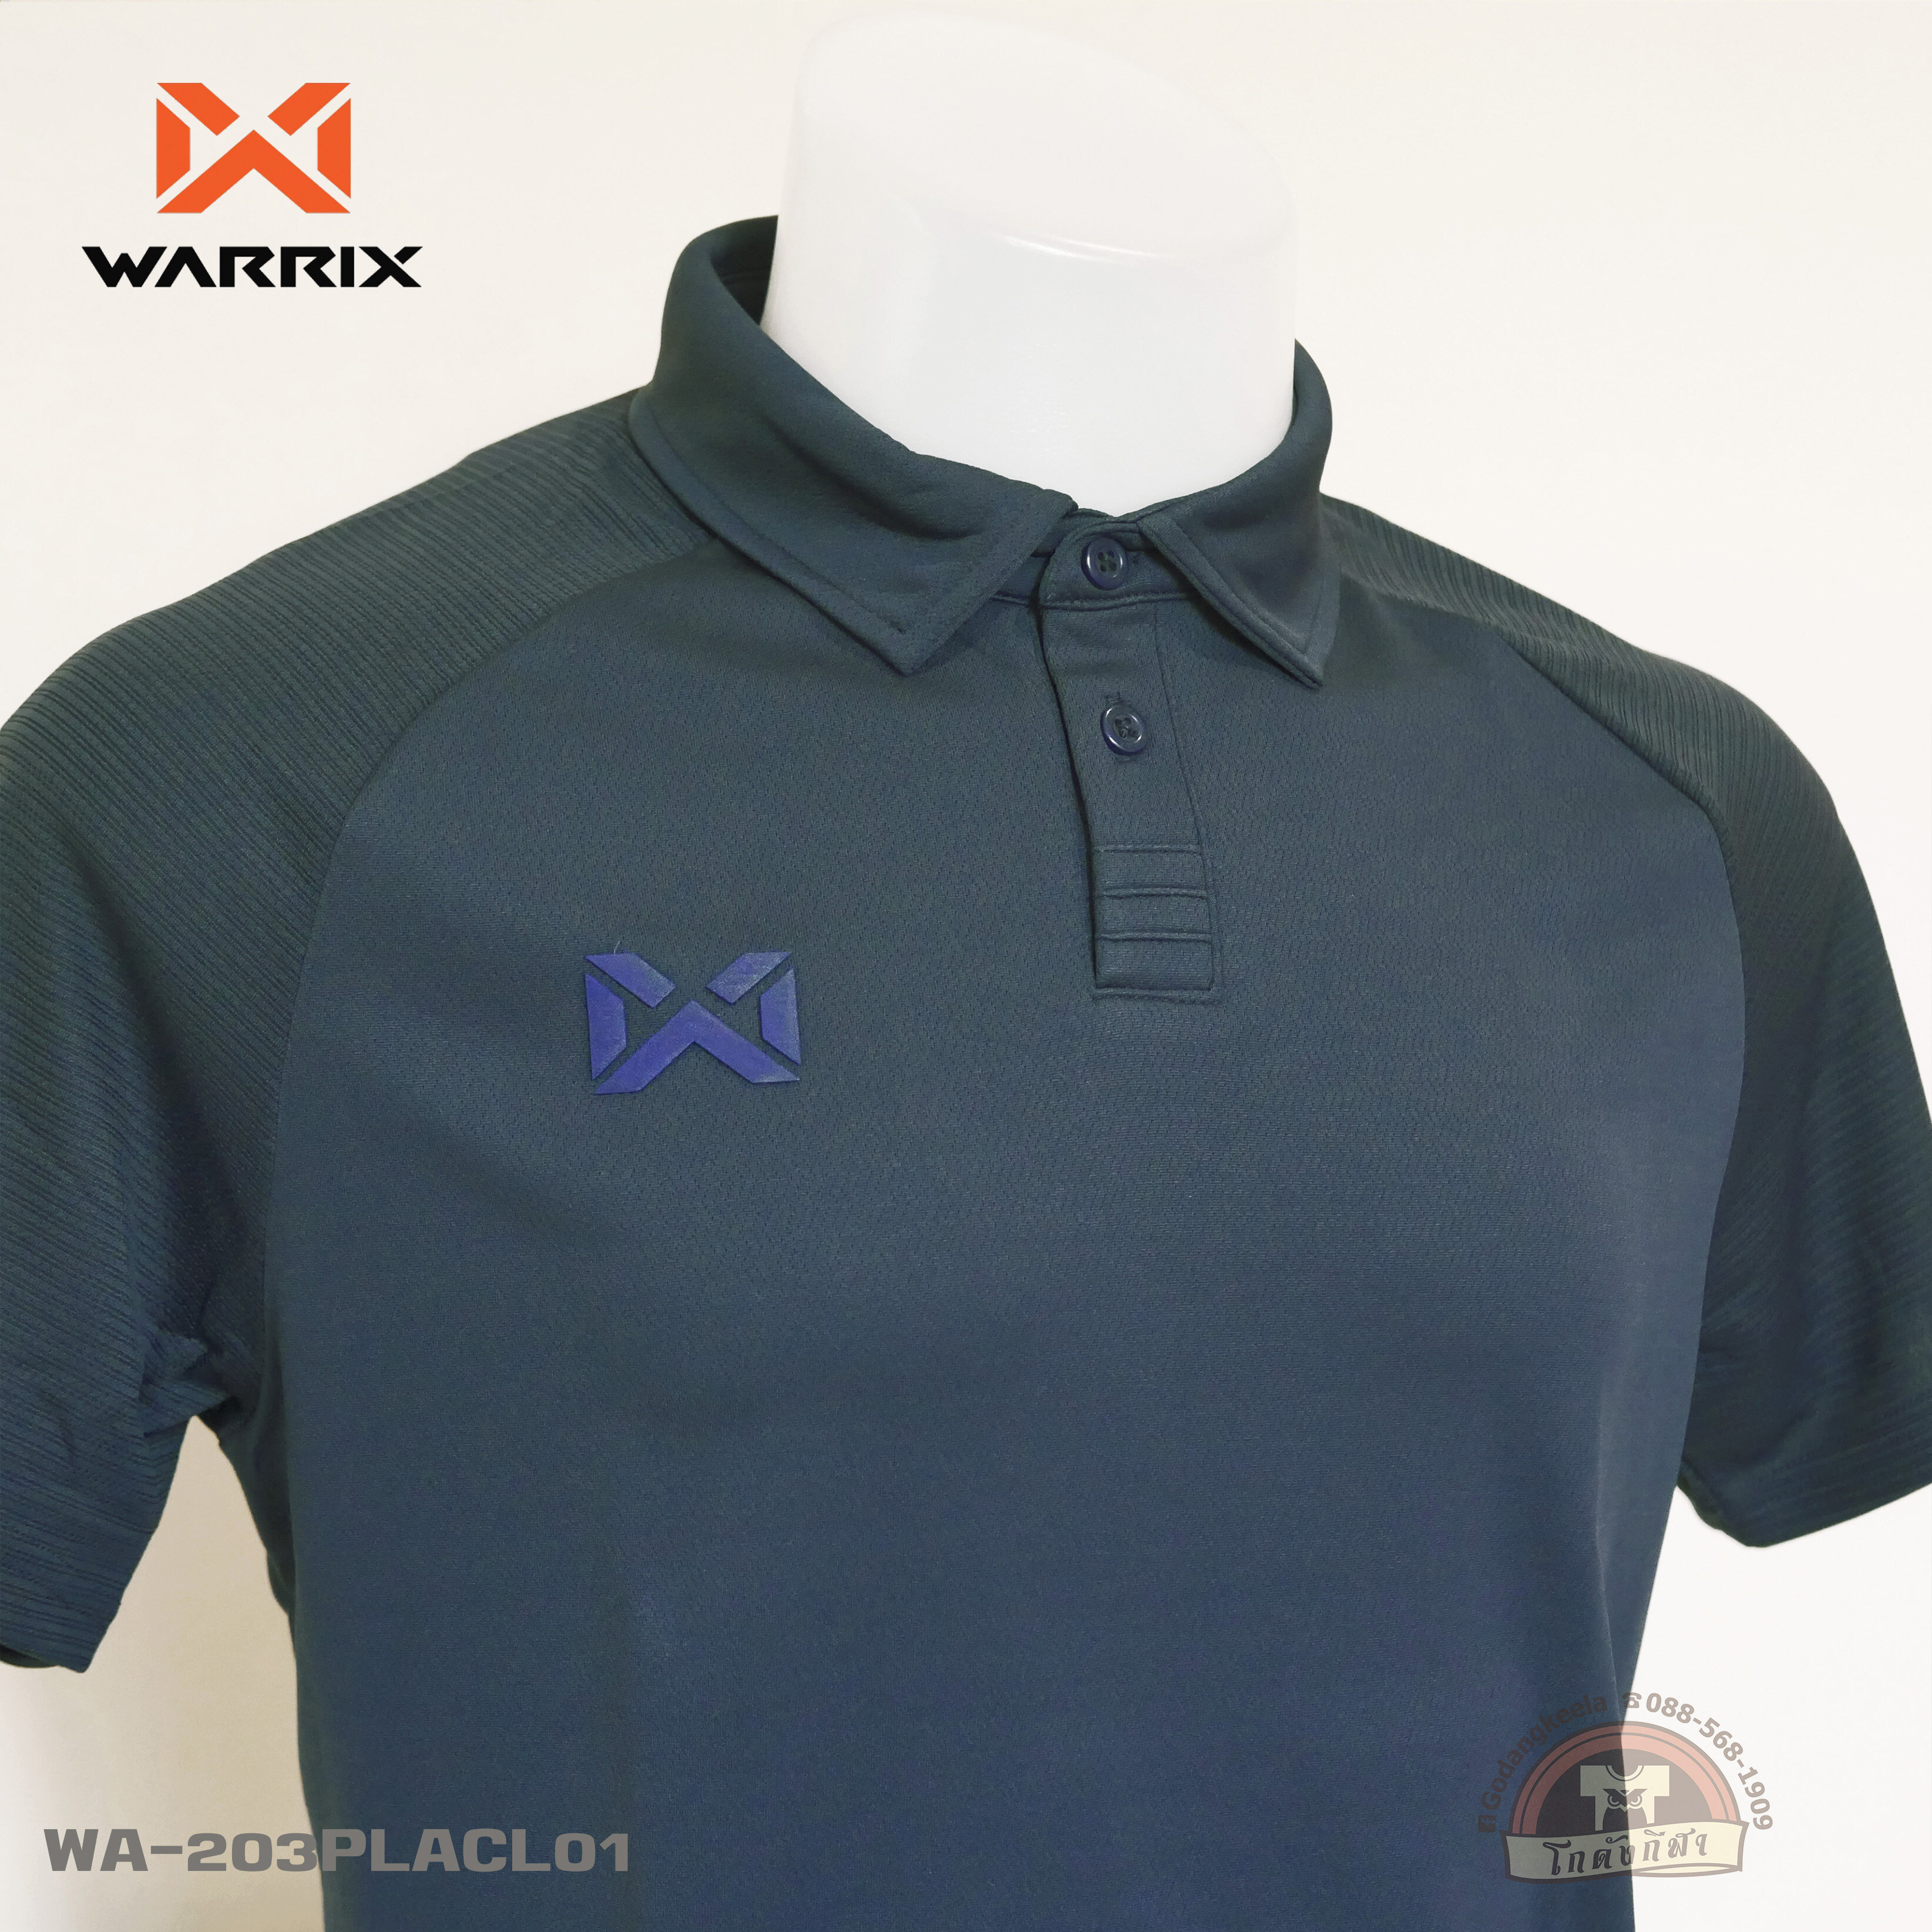 WARRIX เสื้อโปโล WA-203PLACL01 วอริกซ์ วาริกซ์ ของแท้ 100%